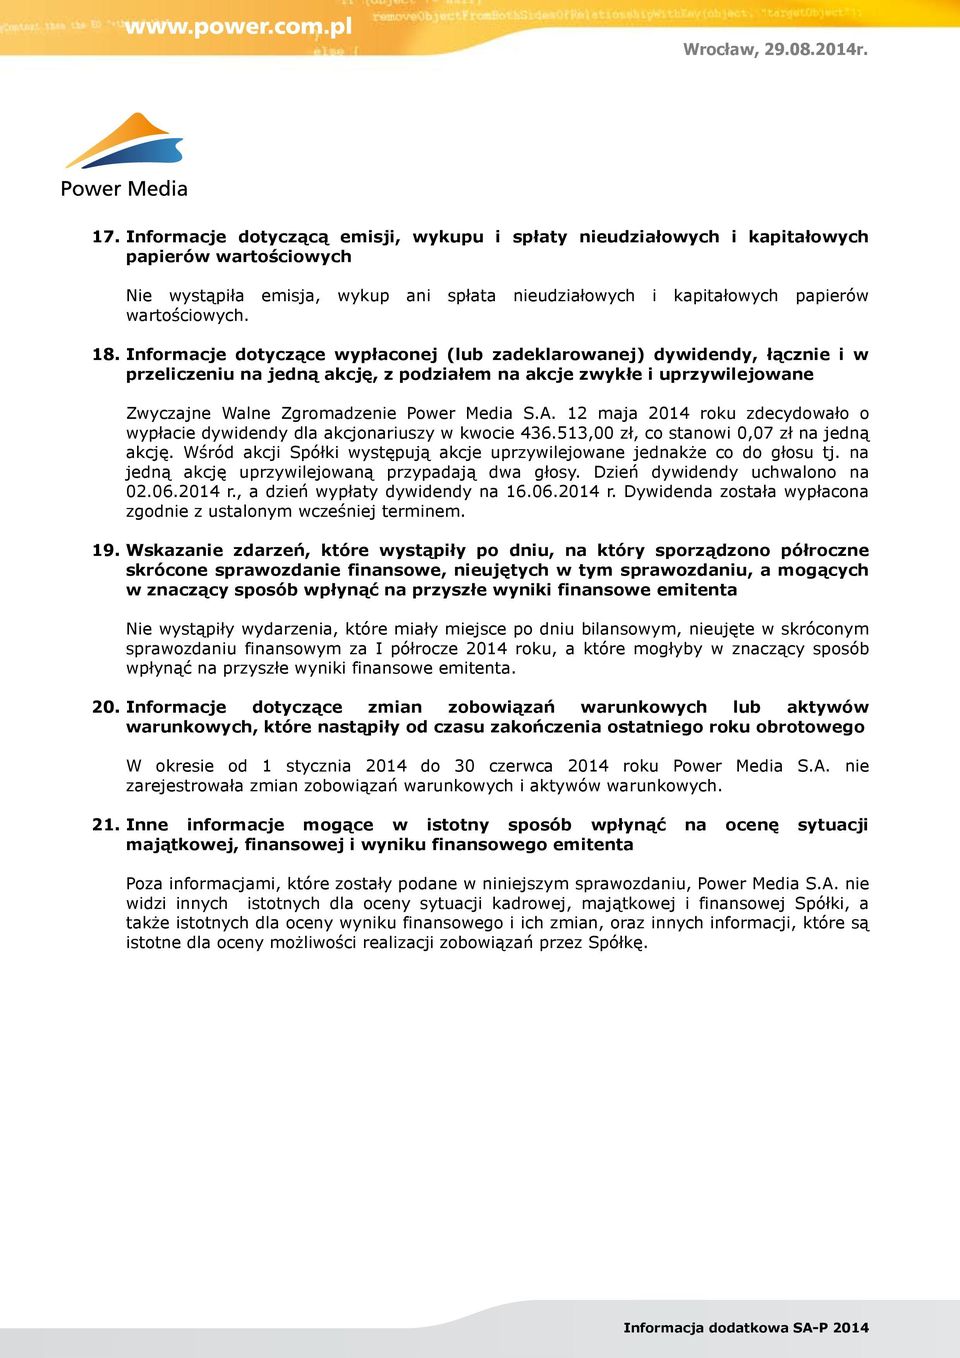 12 maja 2014 roku zdecydowało o wypłacie dywidendy dla akcjonariuszy w kwocie 436.513,00 zł, co stanowi 0,07 zł na jedną akcję.